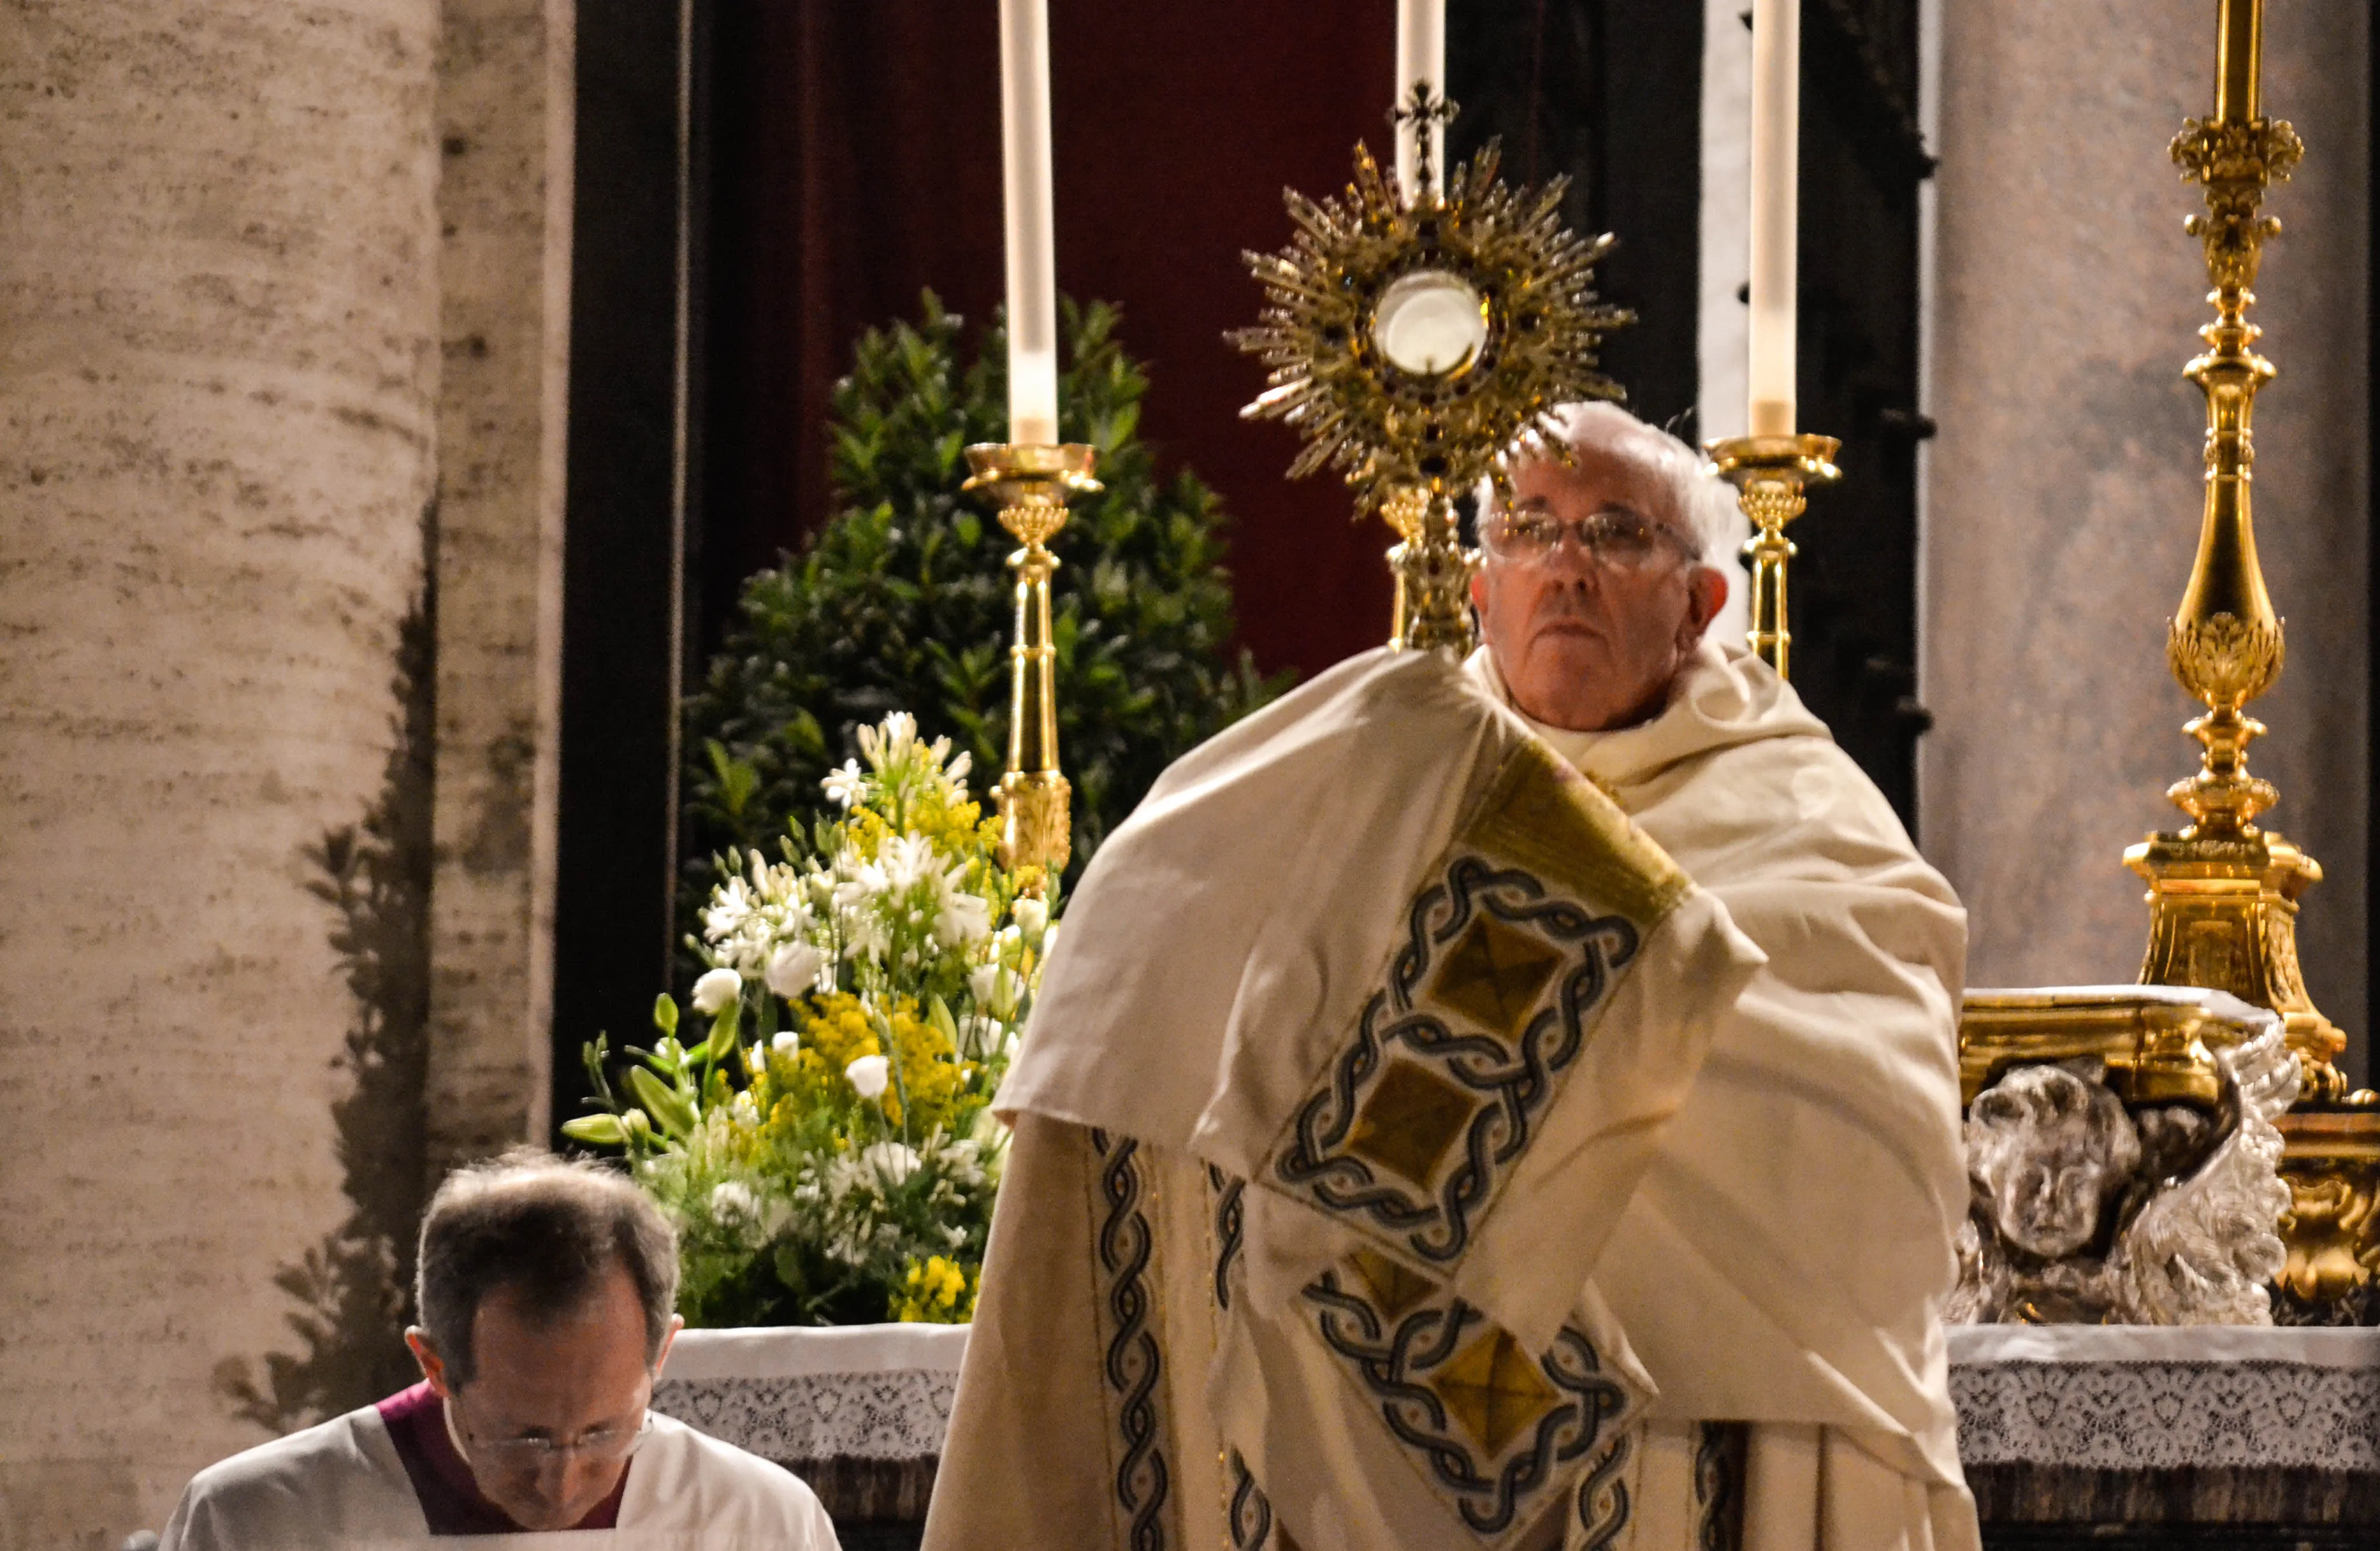 El Papa Francisco en la celebración del Corpus Christi hoy en el Vaticano (Foto: Daniel Ibáñez / ACI Prensa)?w=200&h=150